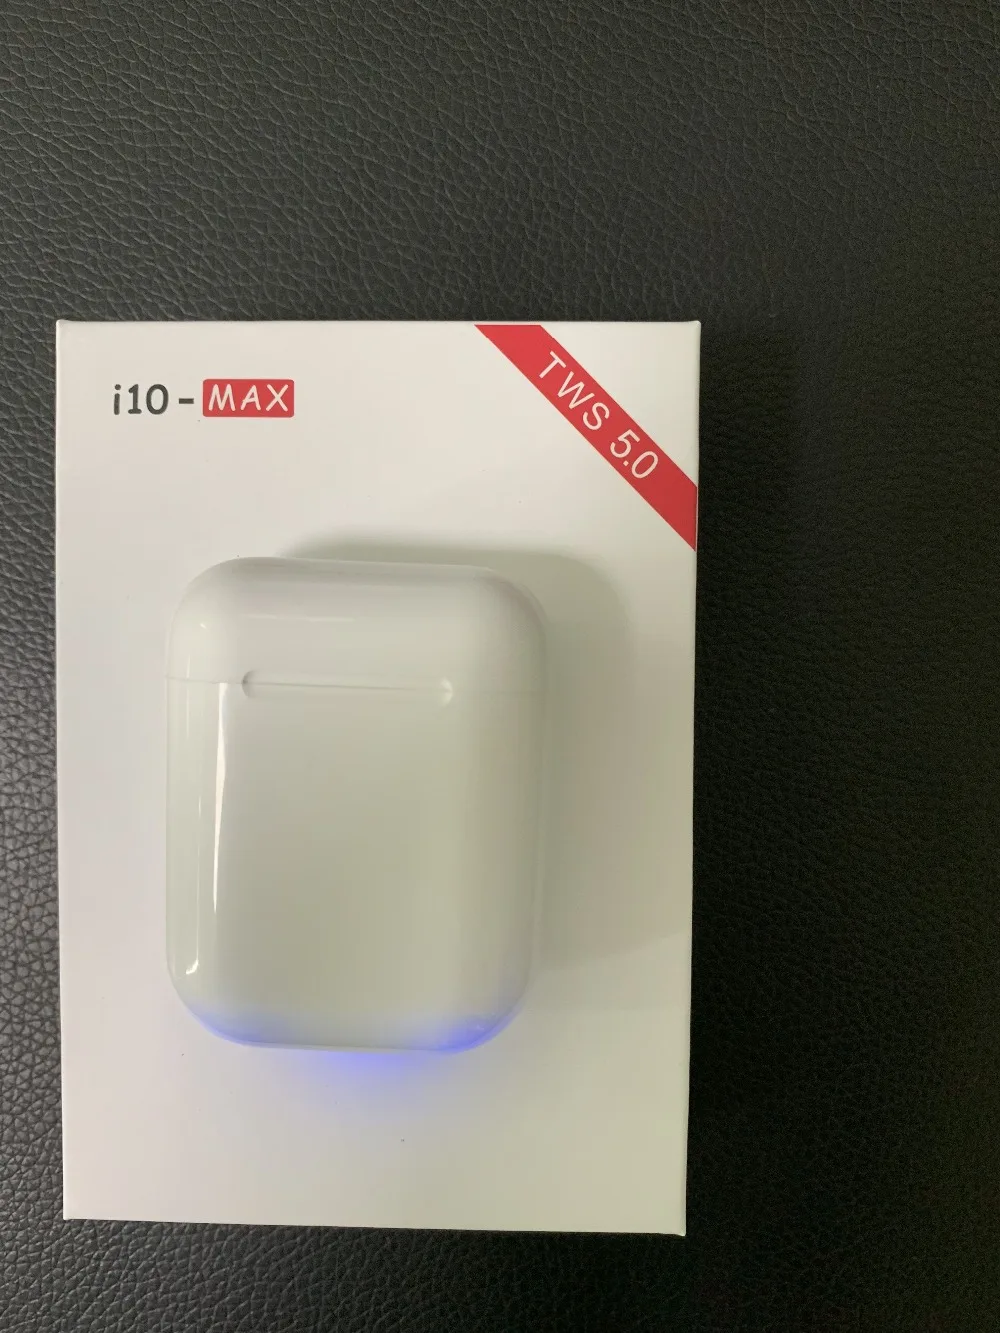 Лучшая цена! i9s tws i10 Max TWS мини беспроводная гарнитура Bluetooth наушники с зарядной коробкой микрофон для всех смартфонов